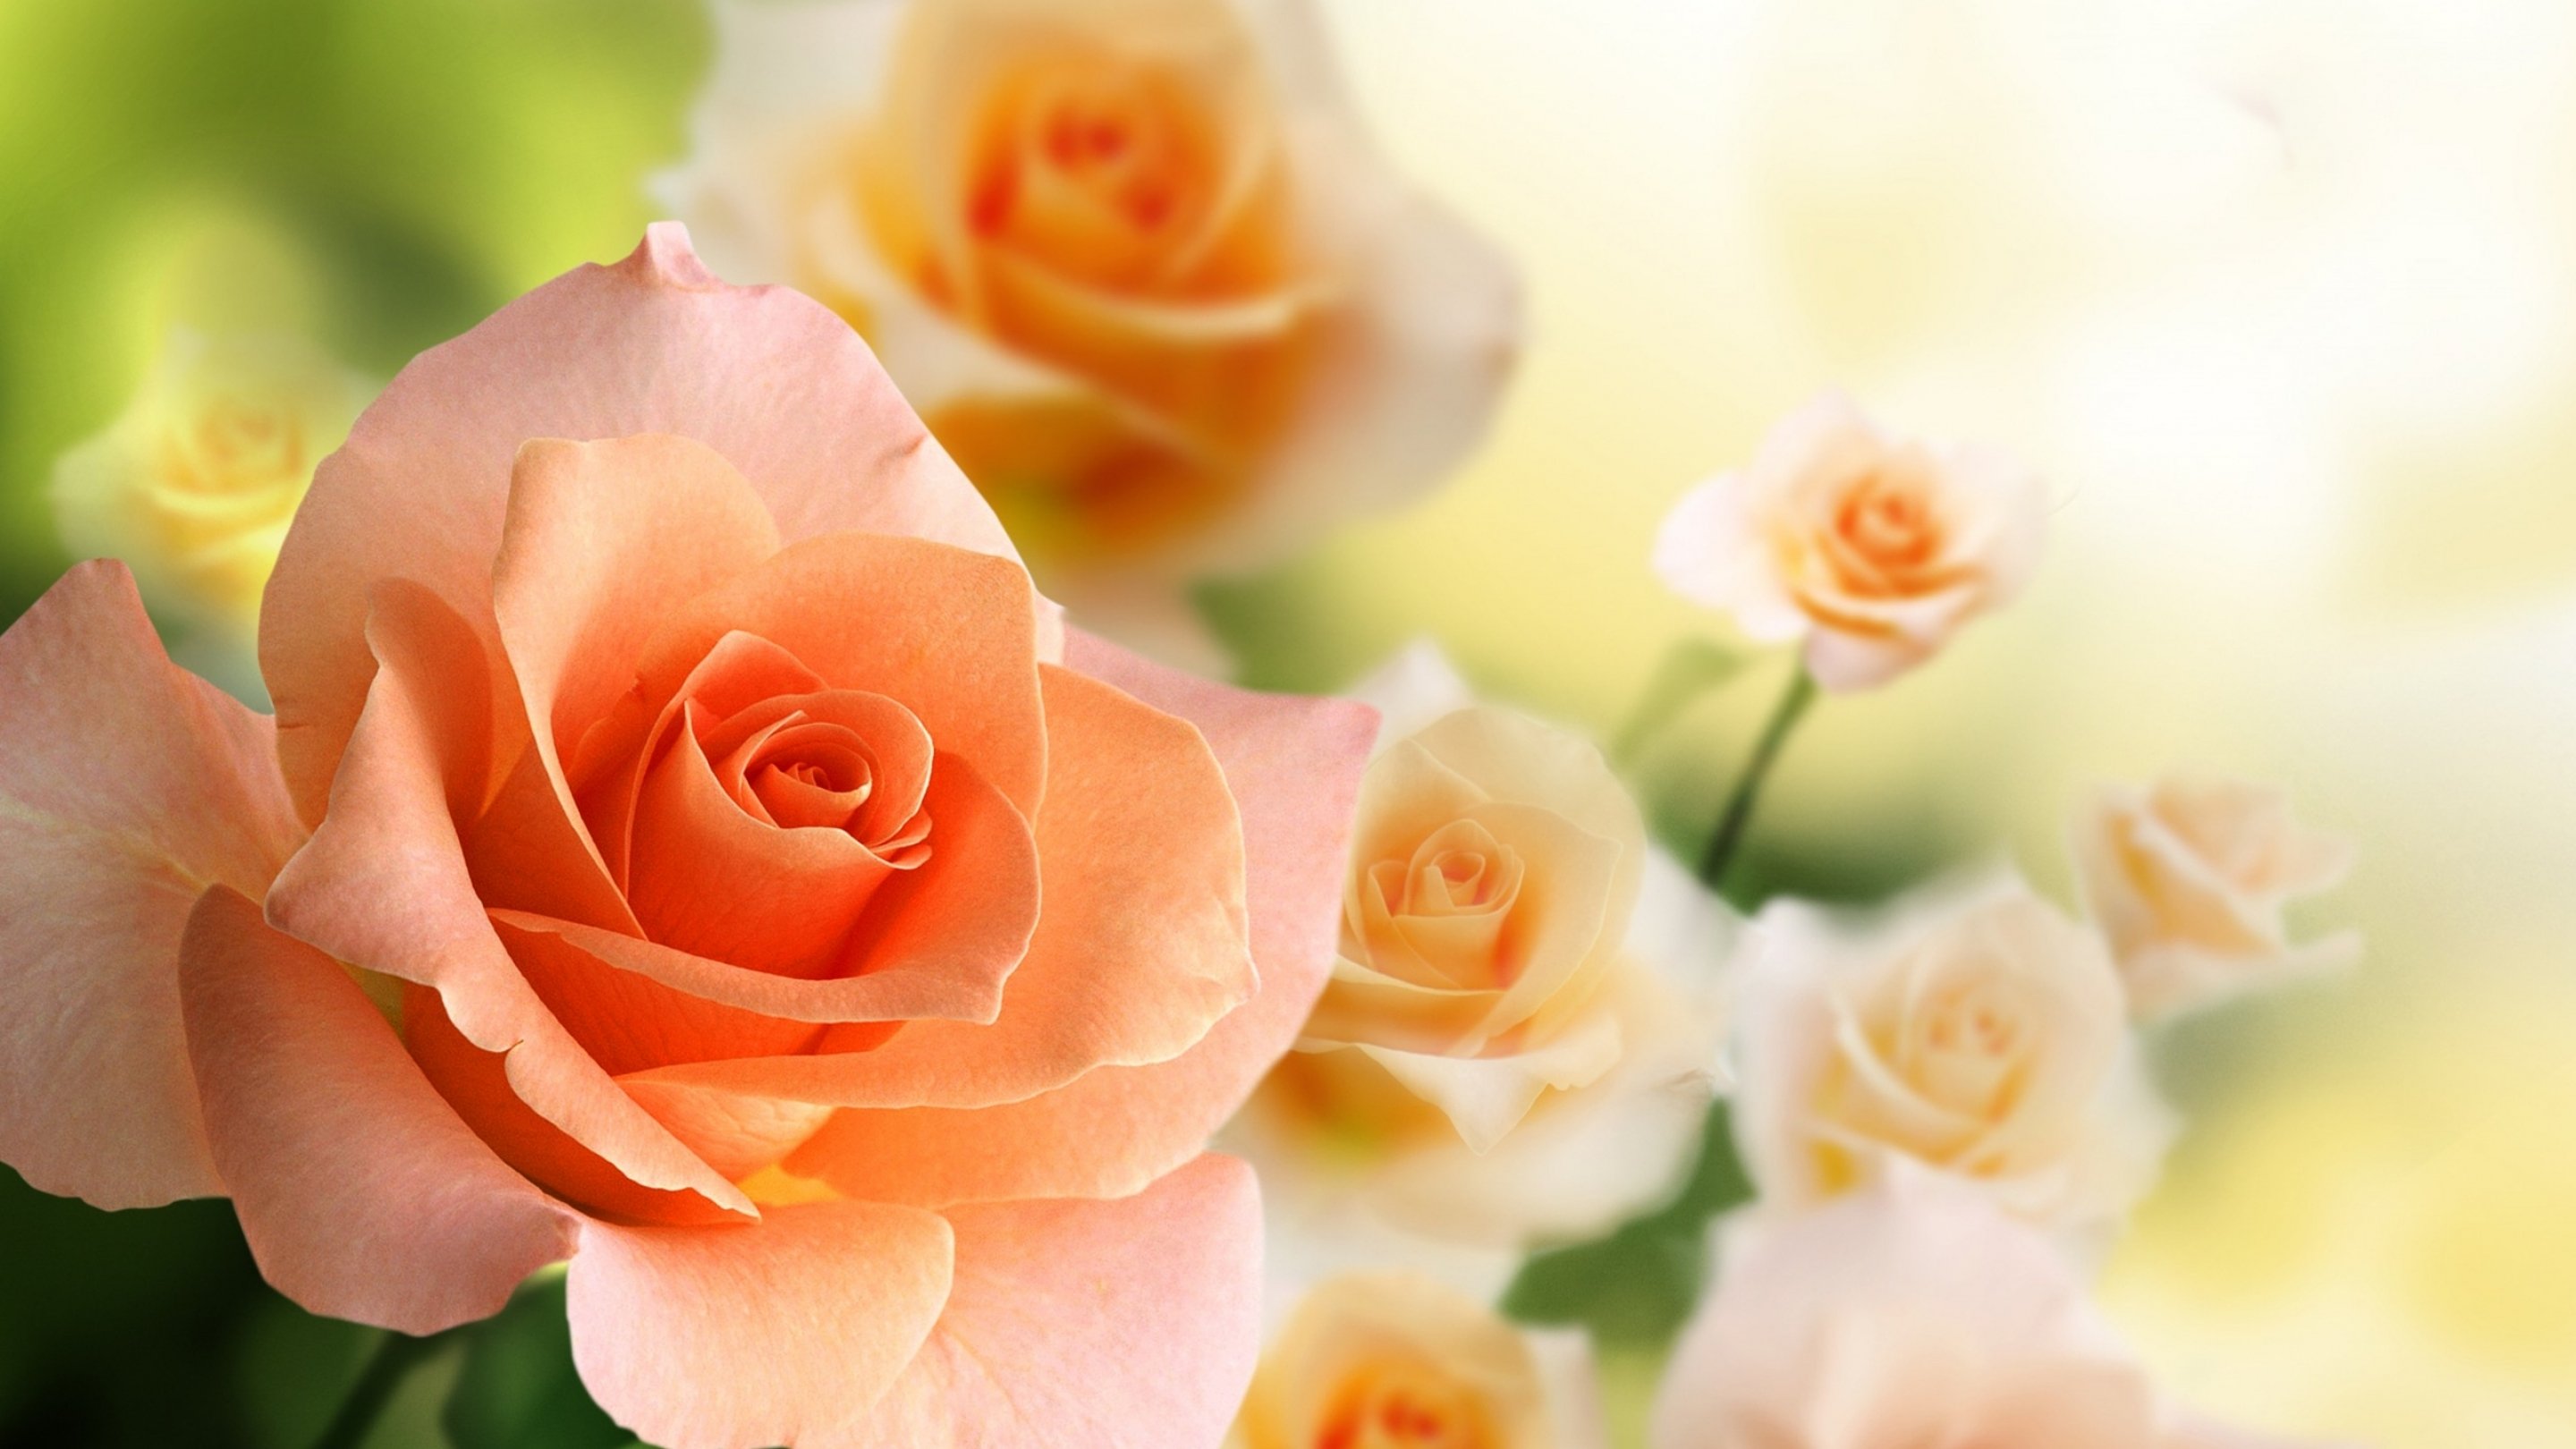 tapete hd natur blume rose,blume,blühende pflanze,gartenrosen,blütenblatt,rose